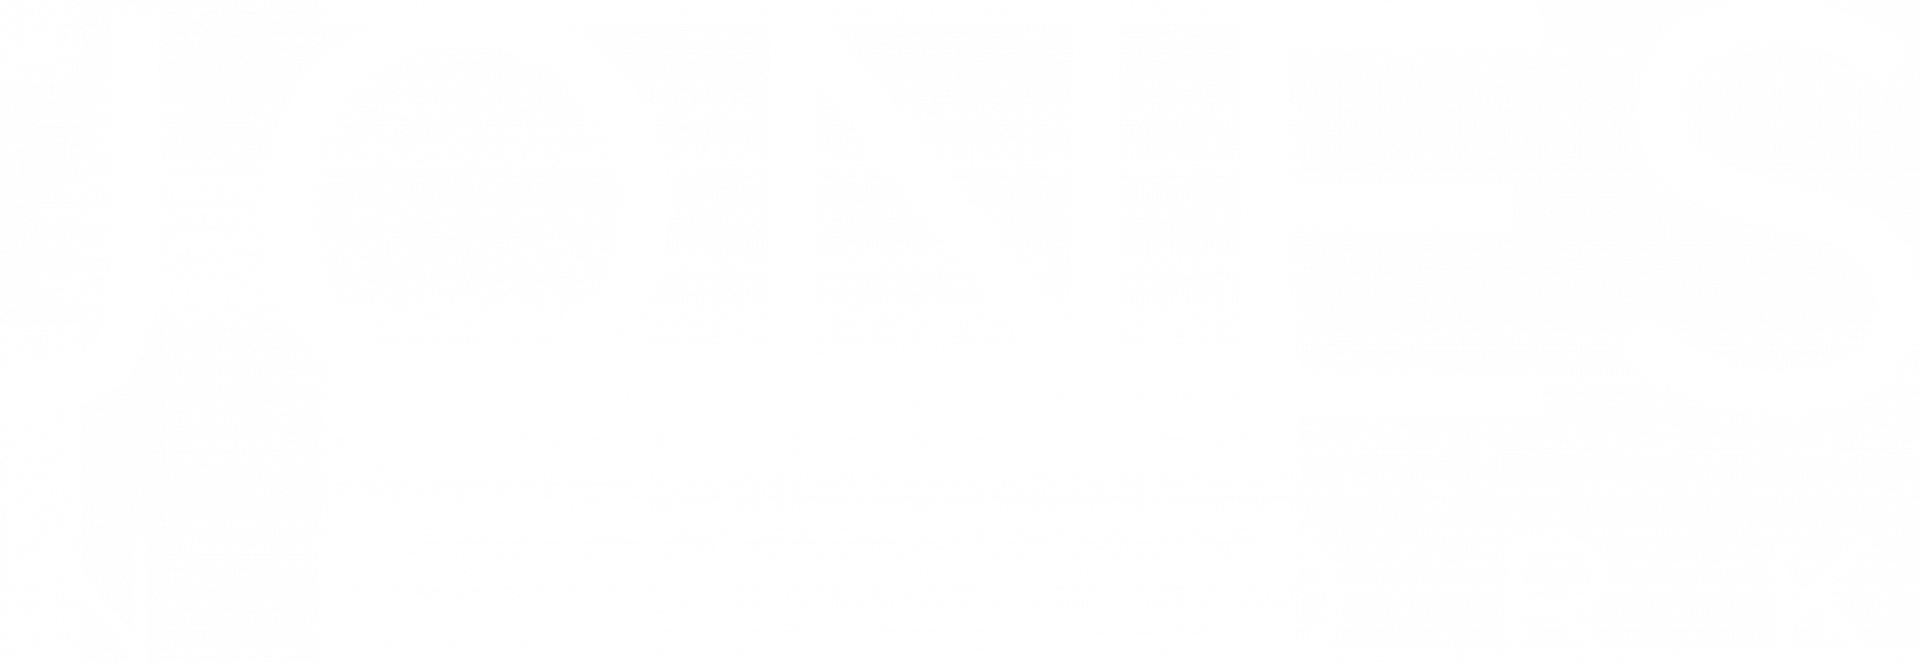 Jones New York.png